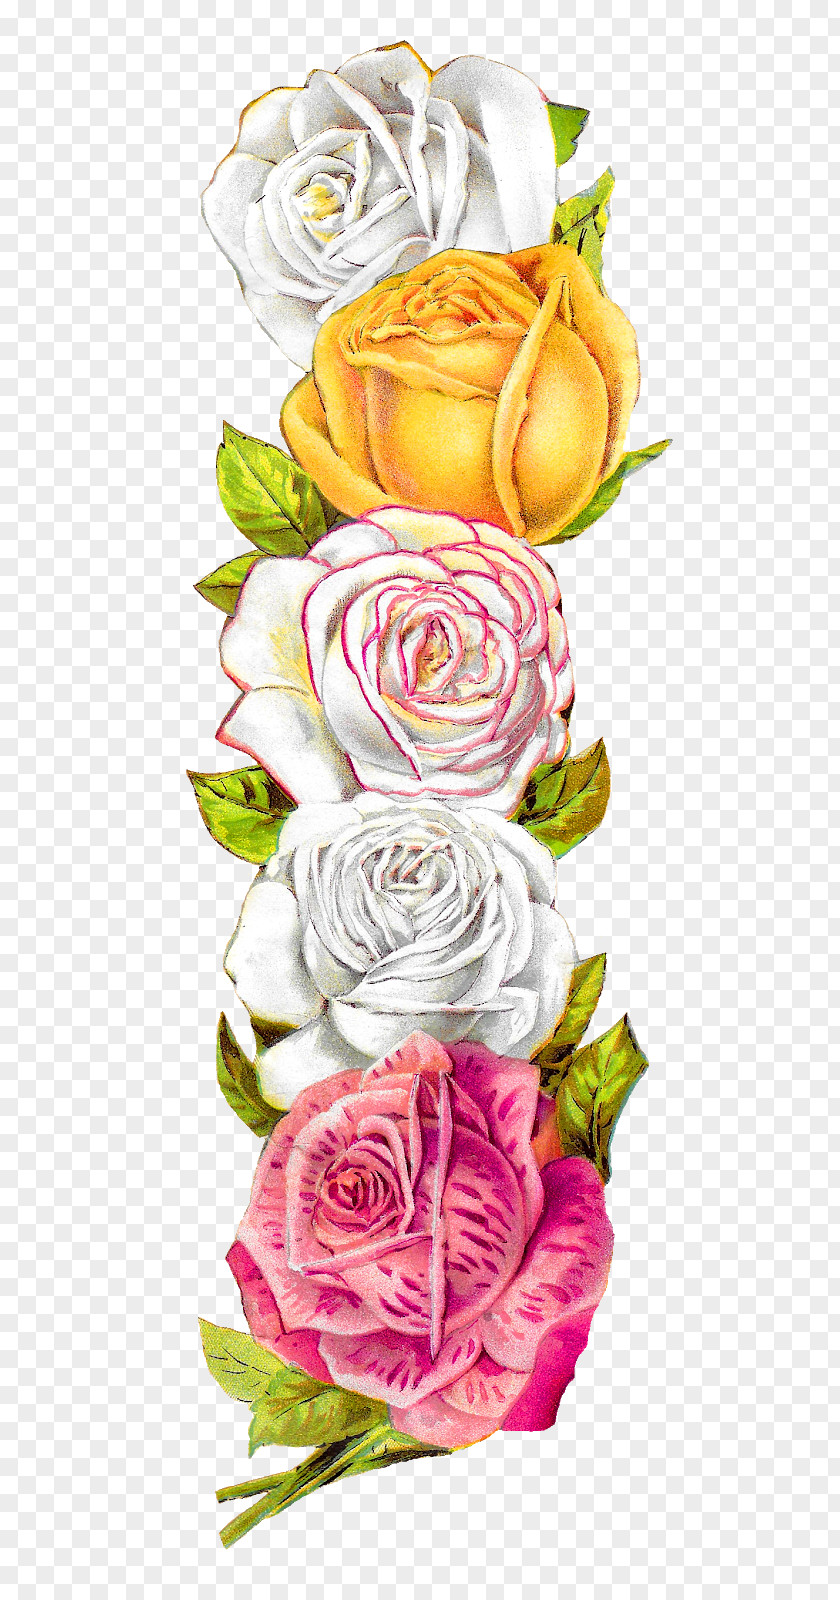 Flower Garden Roses Cabbage Rose Floral Design Clip Art Image PNG